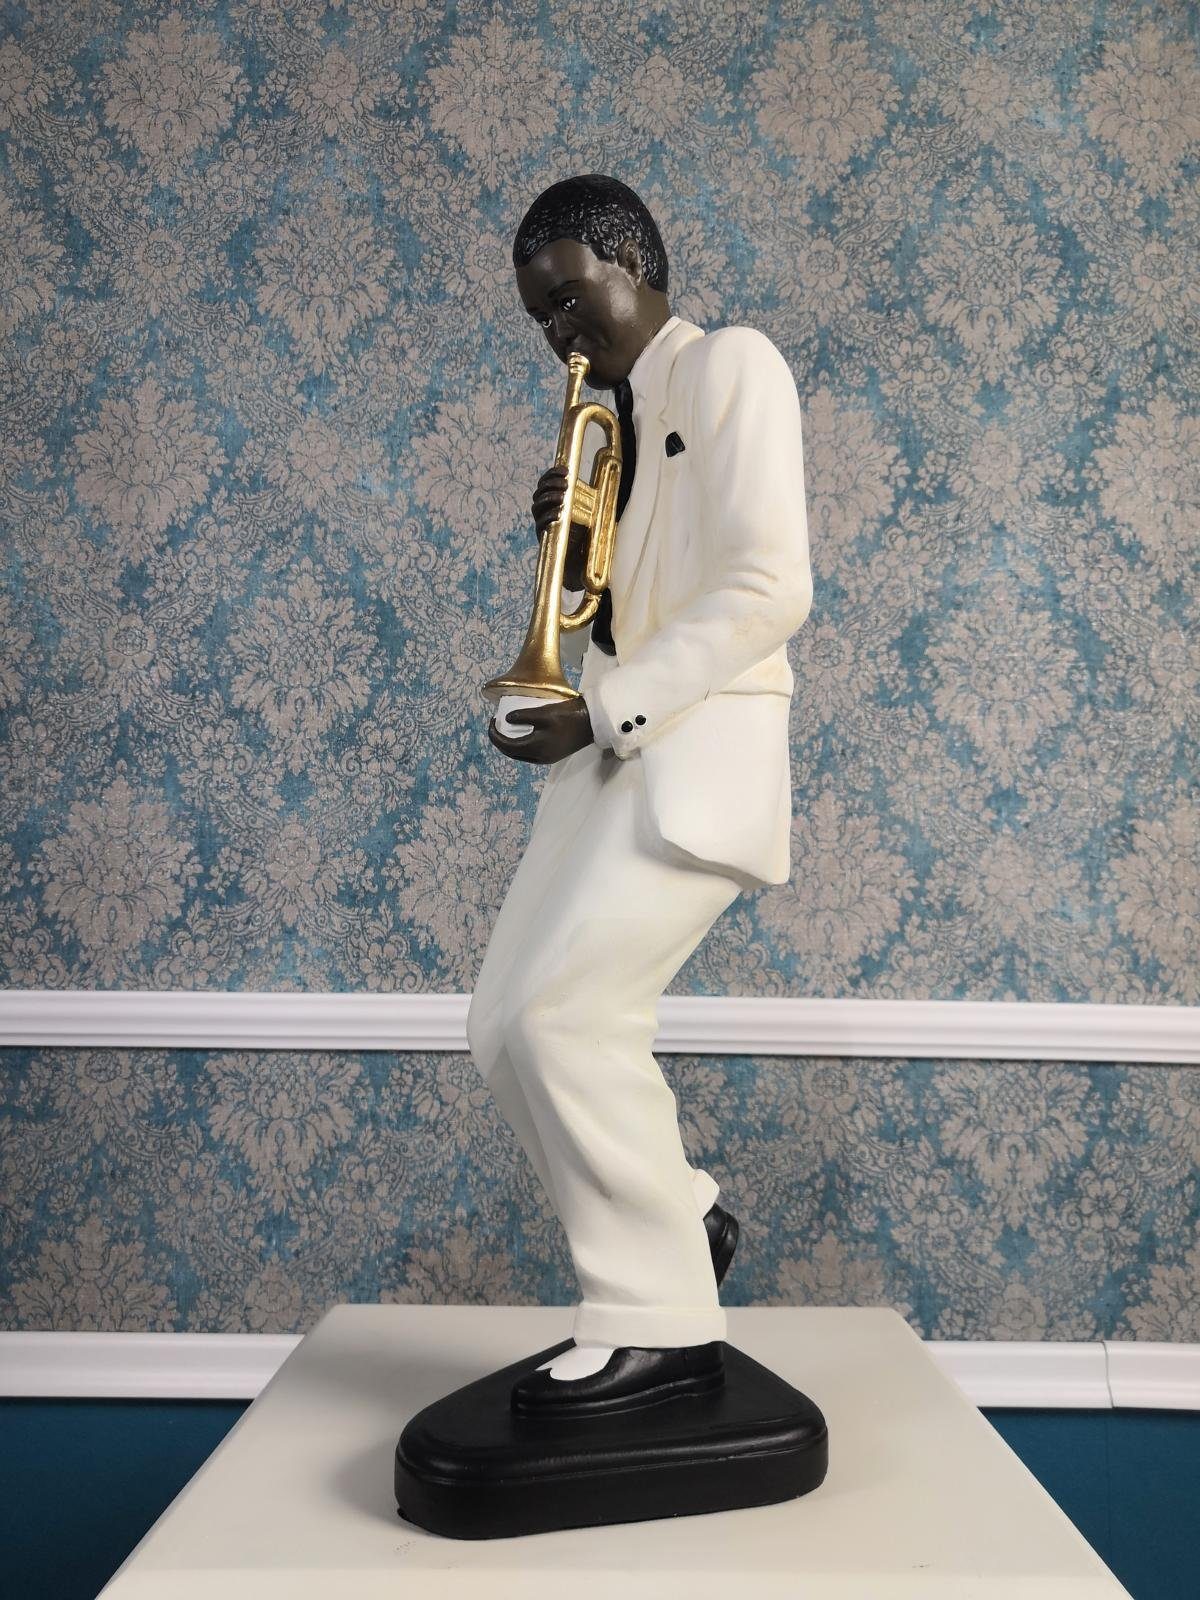 JVmoebel Skulptur Statue Jazz Musik Figur Skulpturen Skulptur Design Figuren Deko